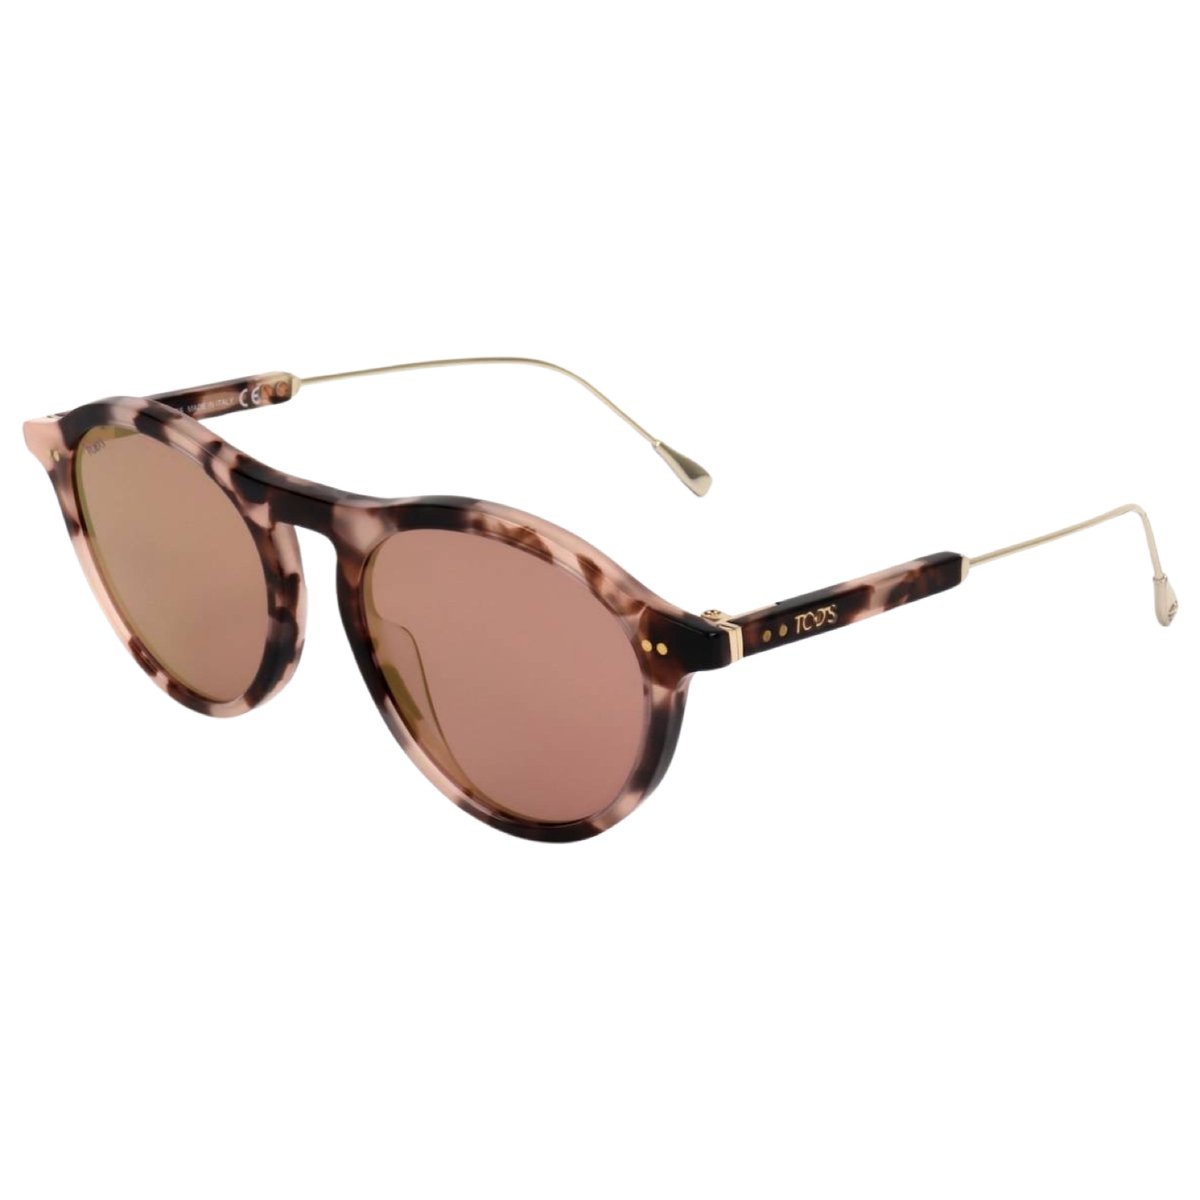 Tod's dames zonnebril To0229 55z 51 Glasses Frame, Brown Avana